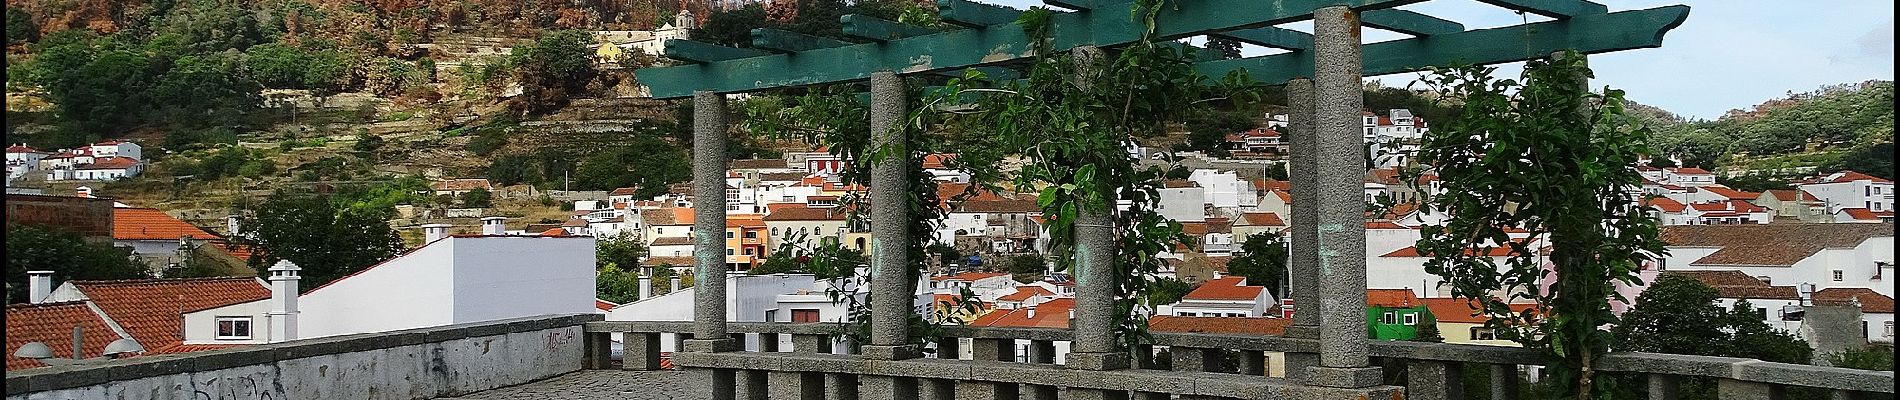 Trail On foot Monchique - Árvores da Vila (Rota das Árvores Monumentais) - Photo